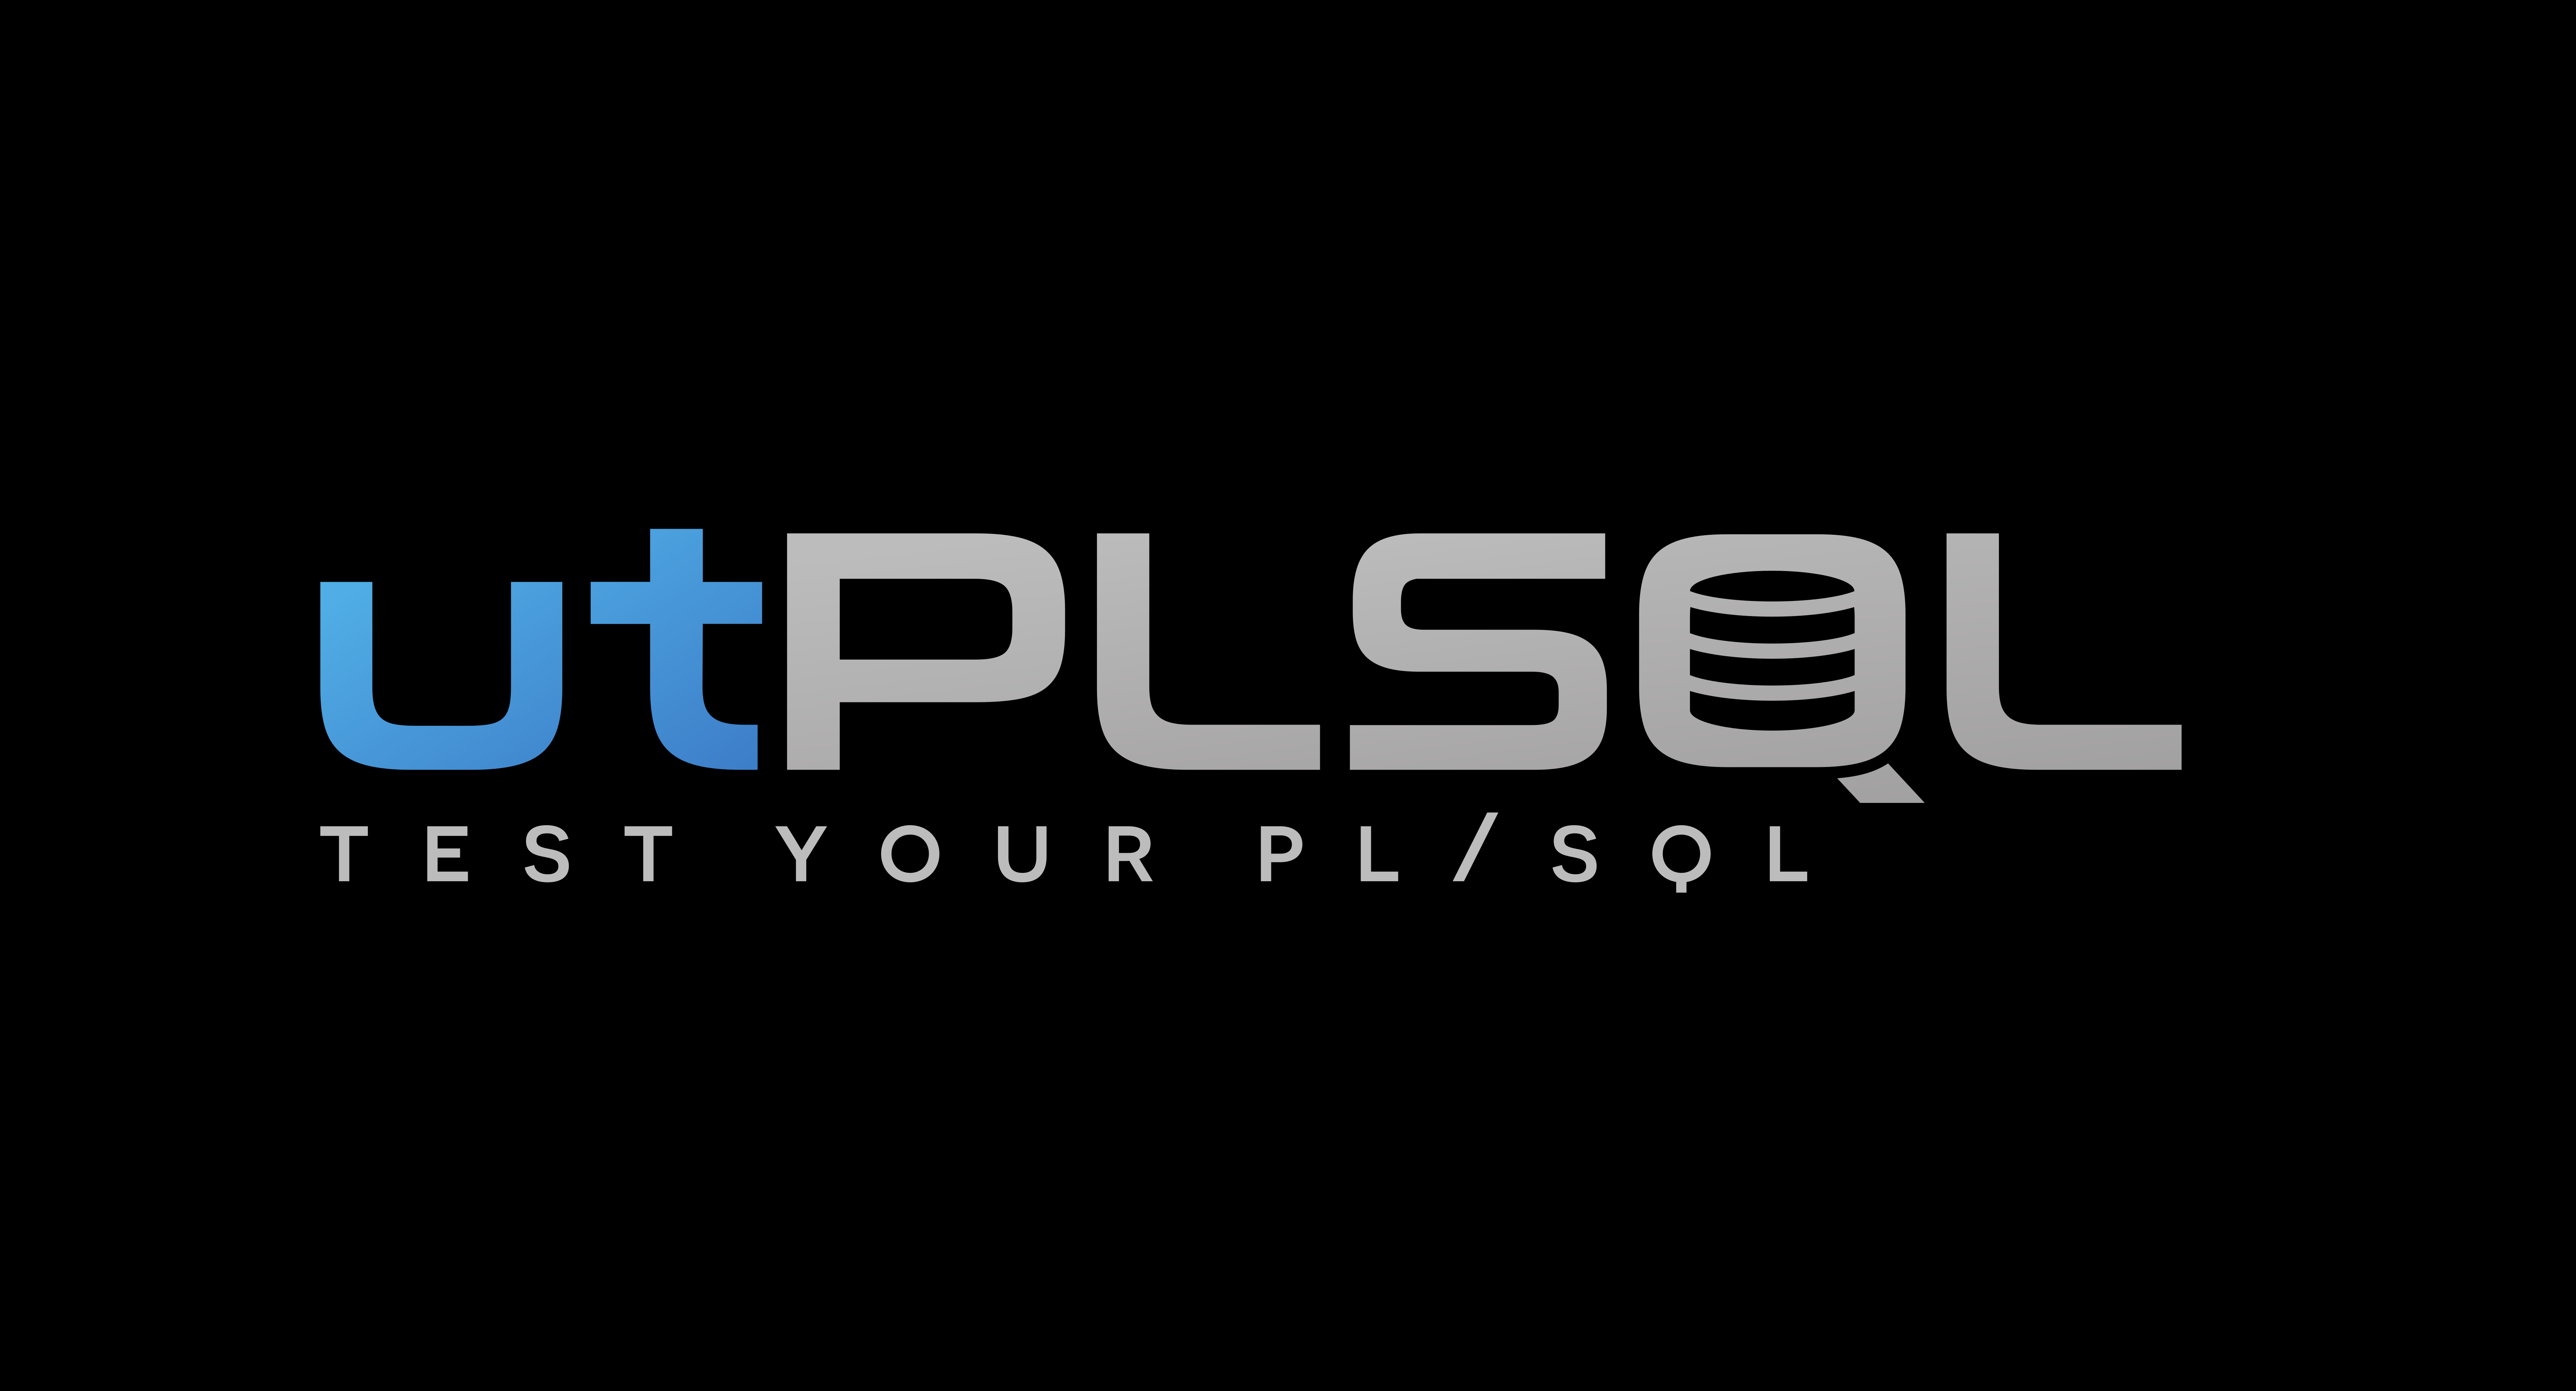 utPLSQL-test-your-plsql-black.png